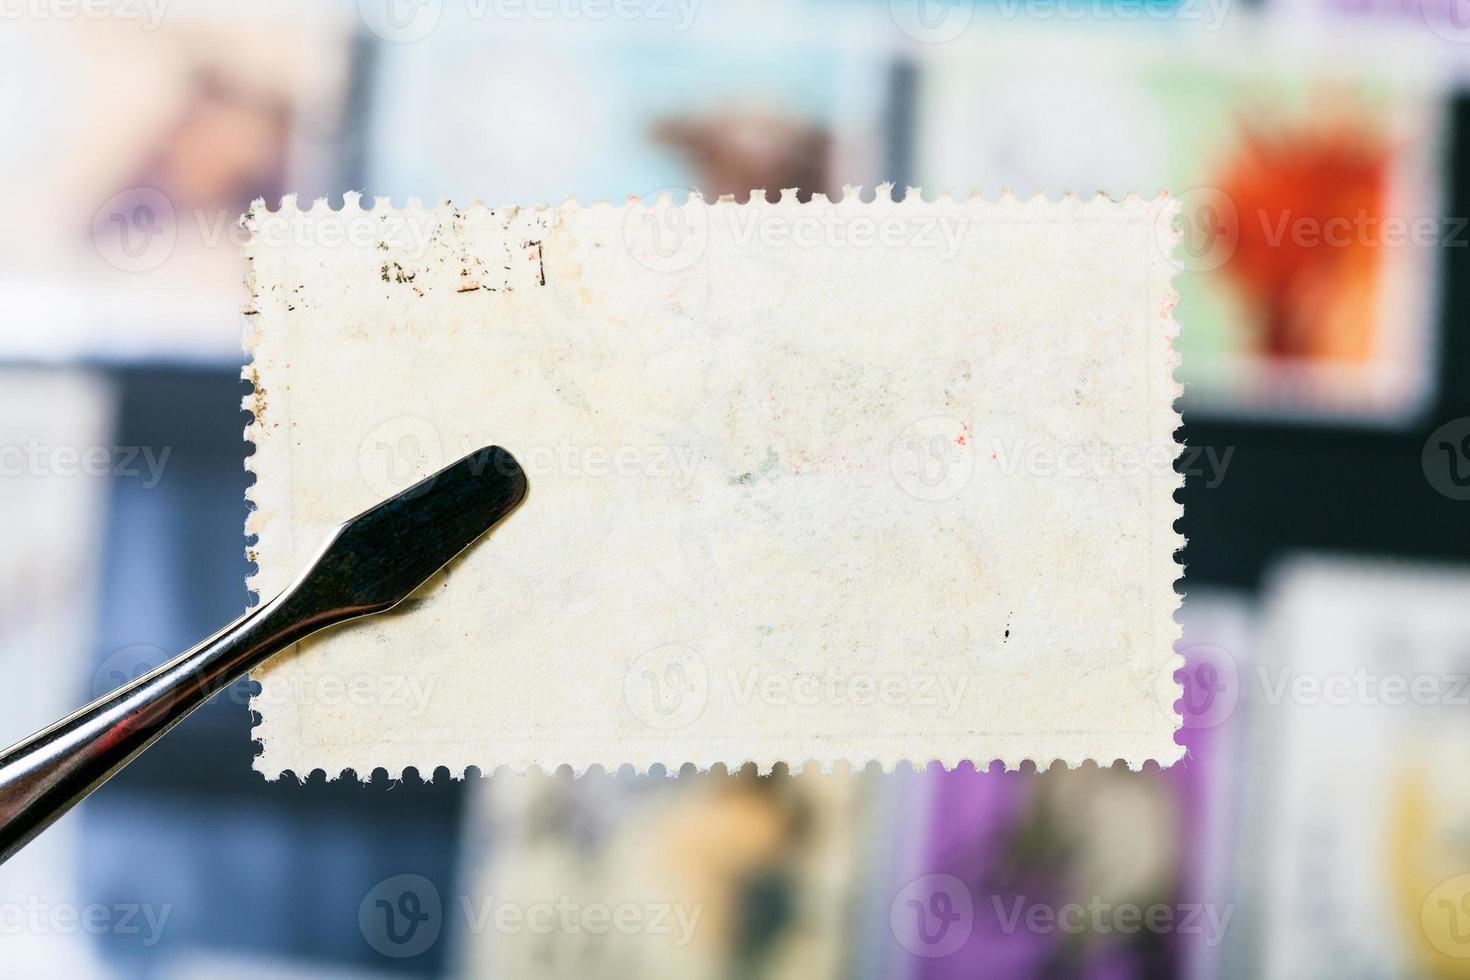 tang houdt postzegel vast met ongebruikte achterkant foto